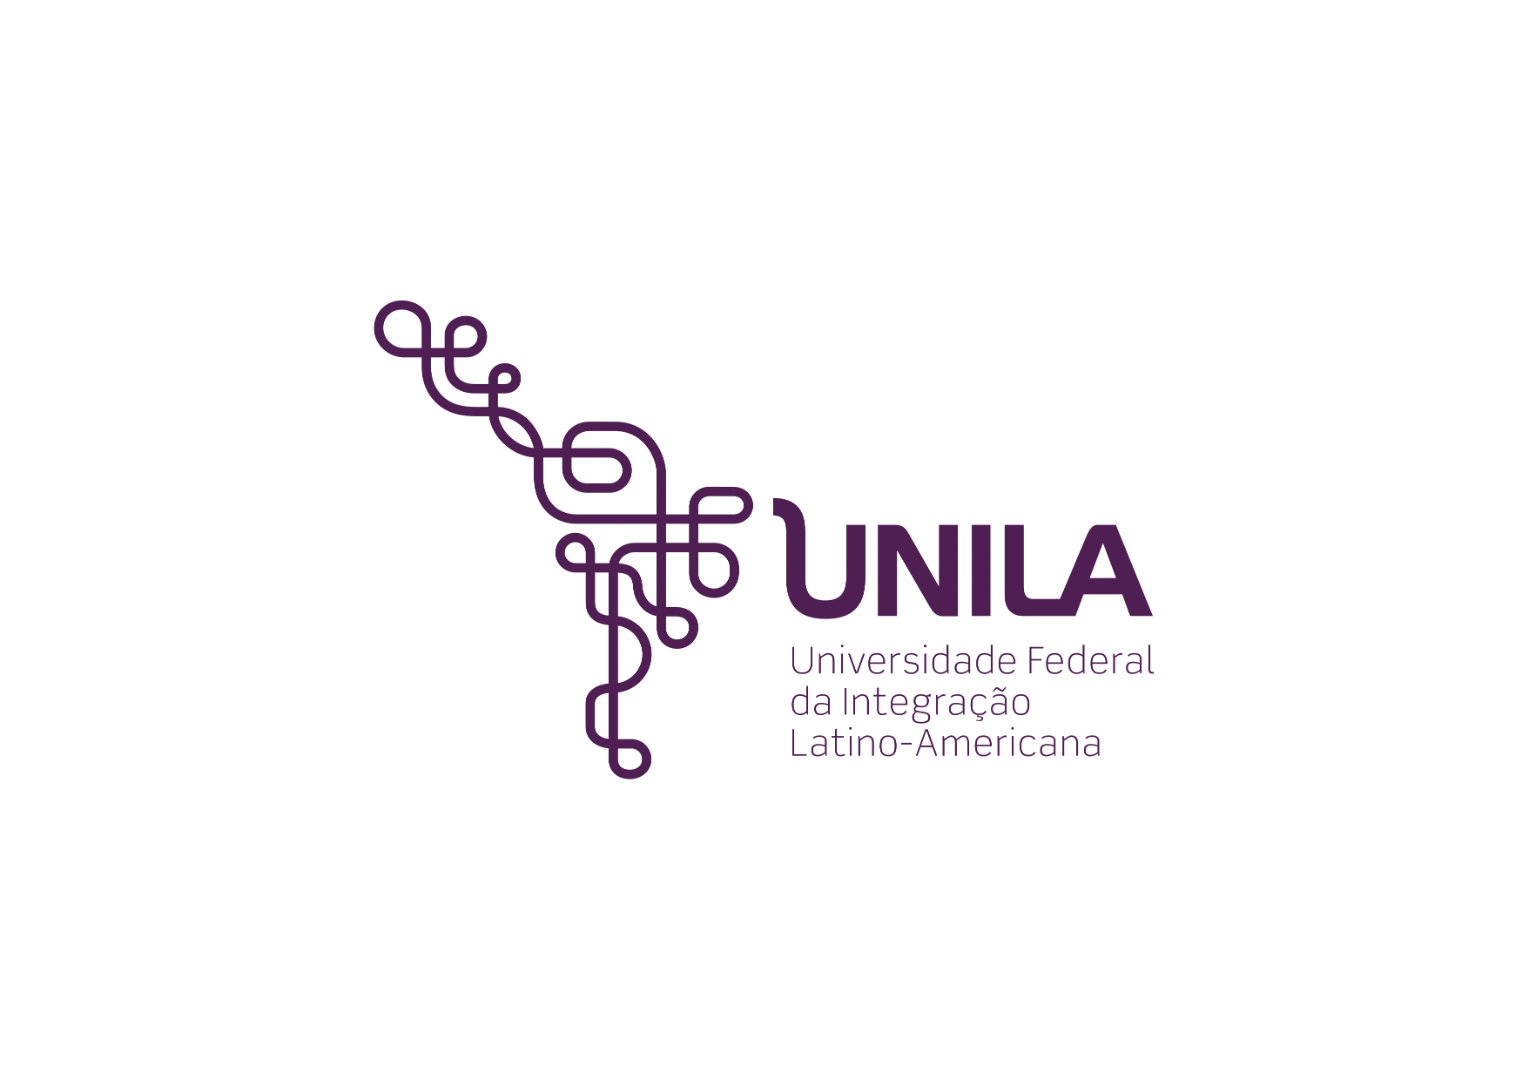 UNILA - Universidade Federal da Integração Latino-Americana.